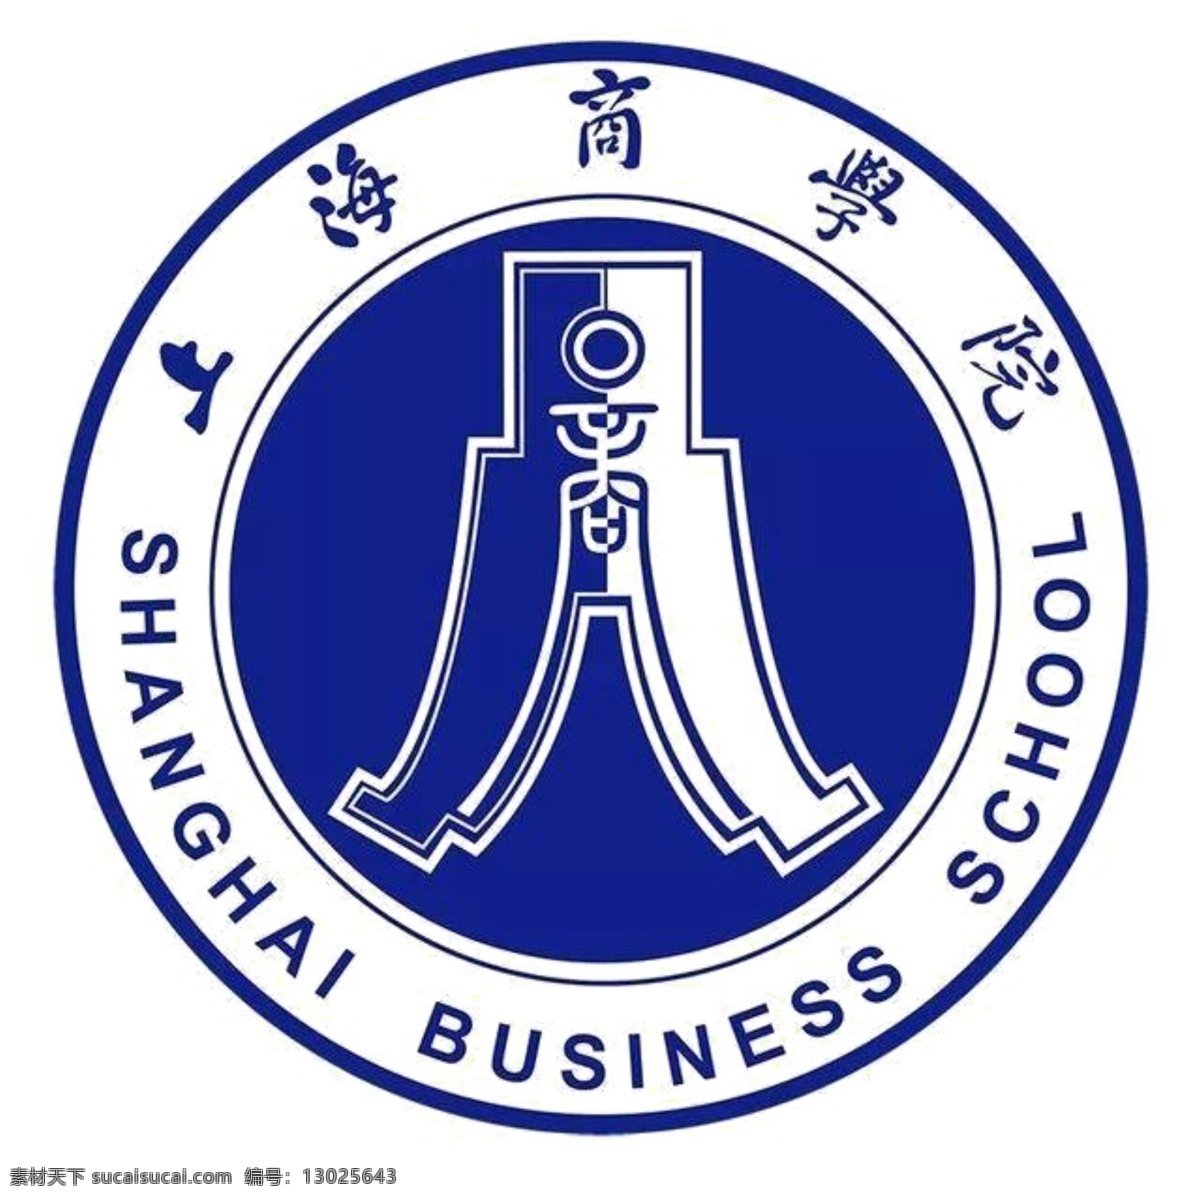 上海 商学院 校徽 logo 上海商学院 商学院校徽 校徽logo 大学 标志图标 公共标识标志